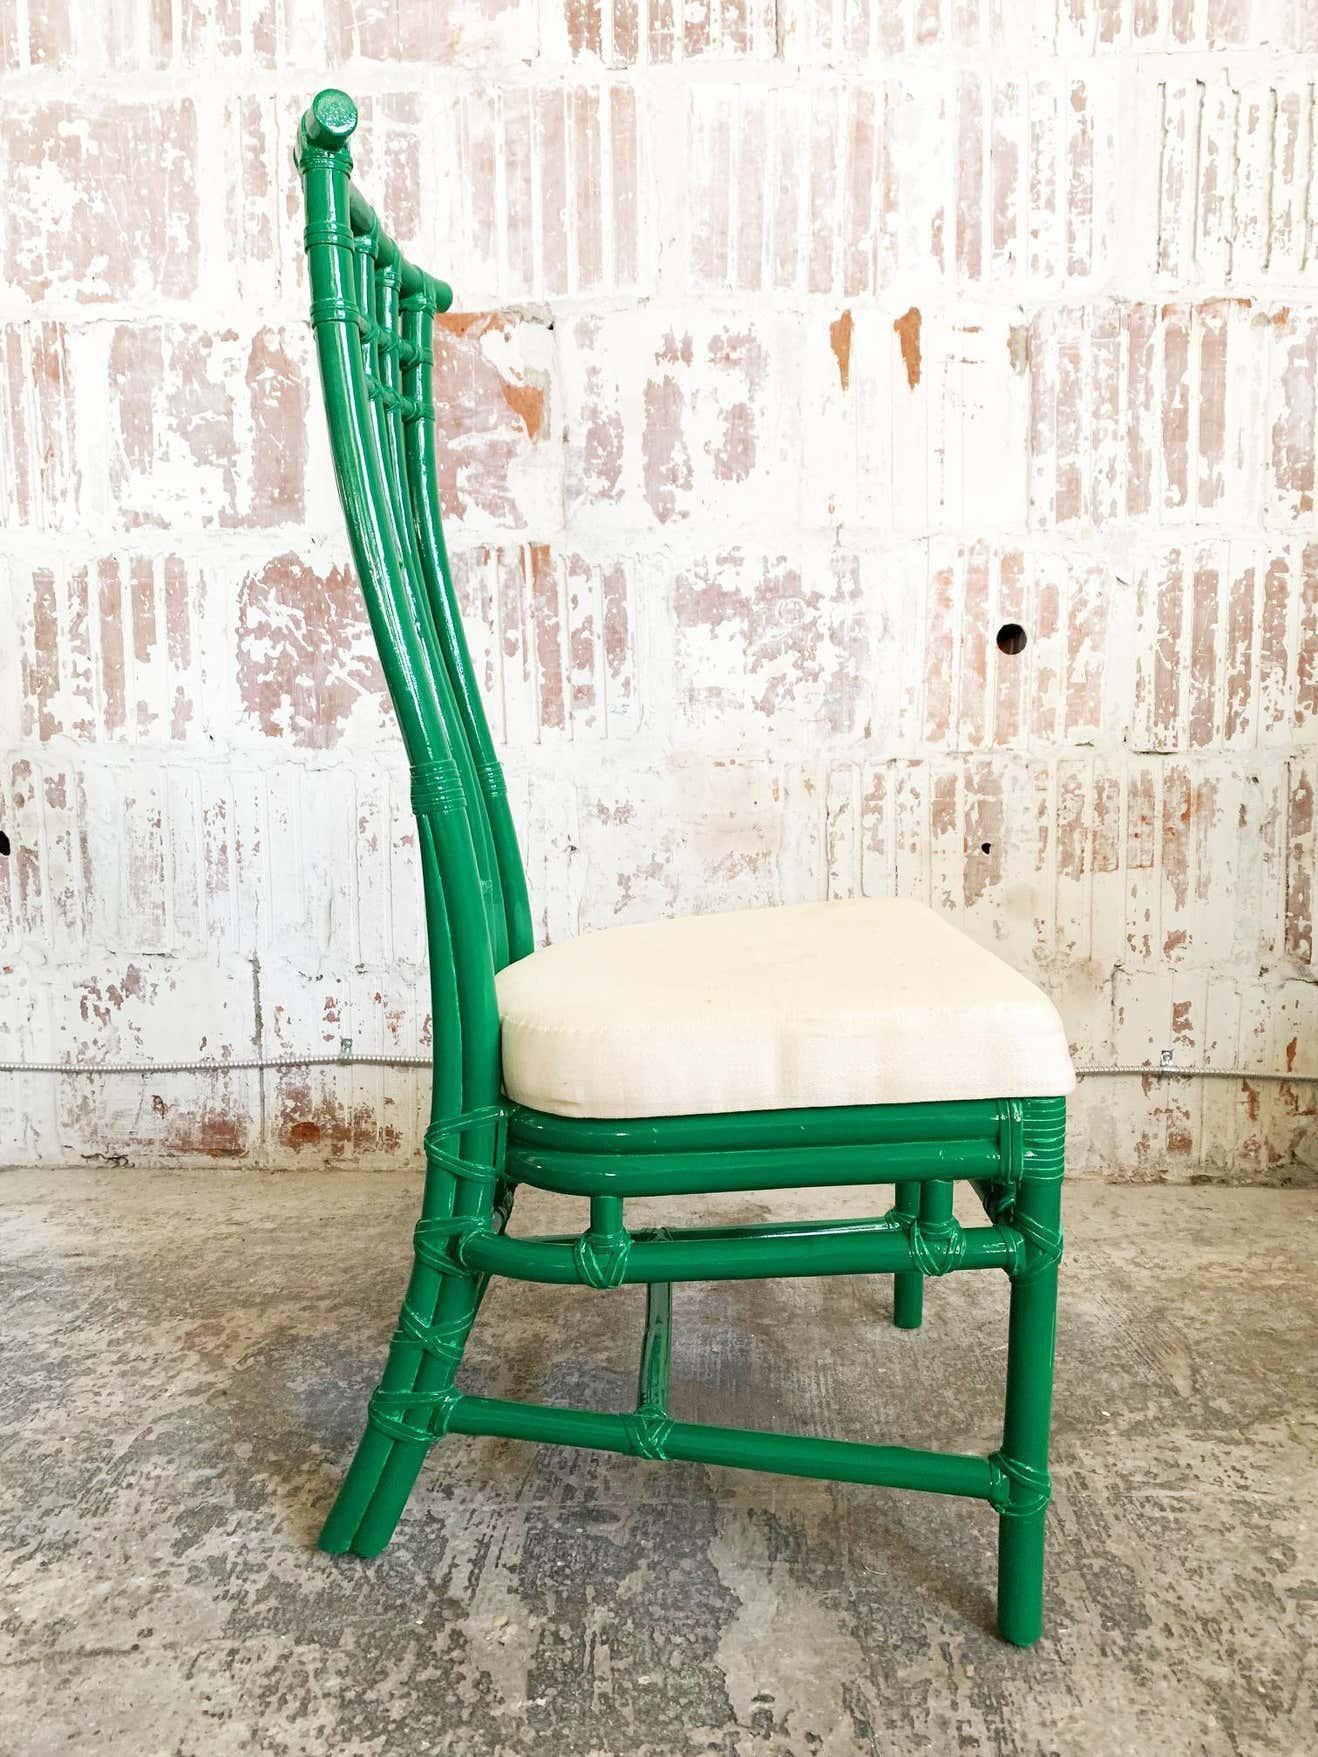 Satz von 6 McGuire Bambus Pagode hohe Rückenlehne Esszimmerstühle. Neu lackiert in grünem Hochglanz. Guter Vintage-Zustand mit kleinen Unvollkommenheiten in der neu lackierten Oberfläche. Kann Schrammen, Flecken oder Abnutzungserscheinungen